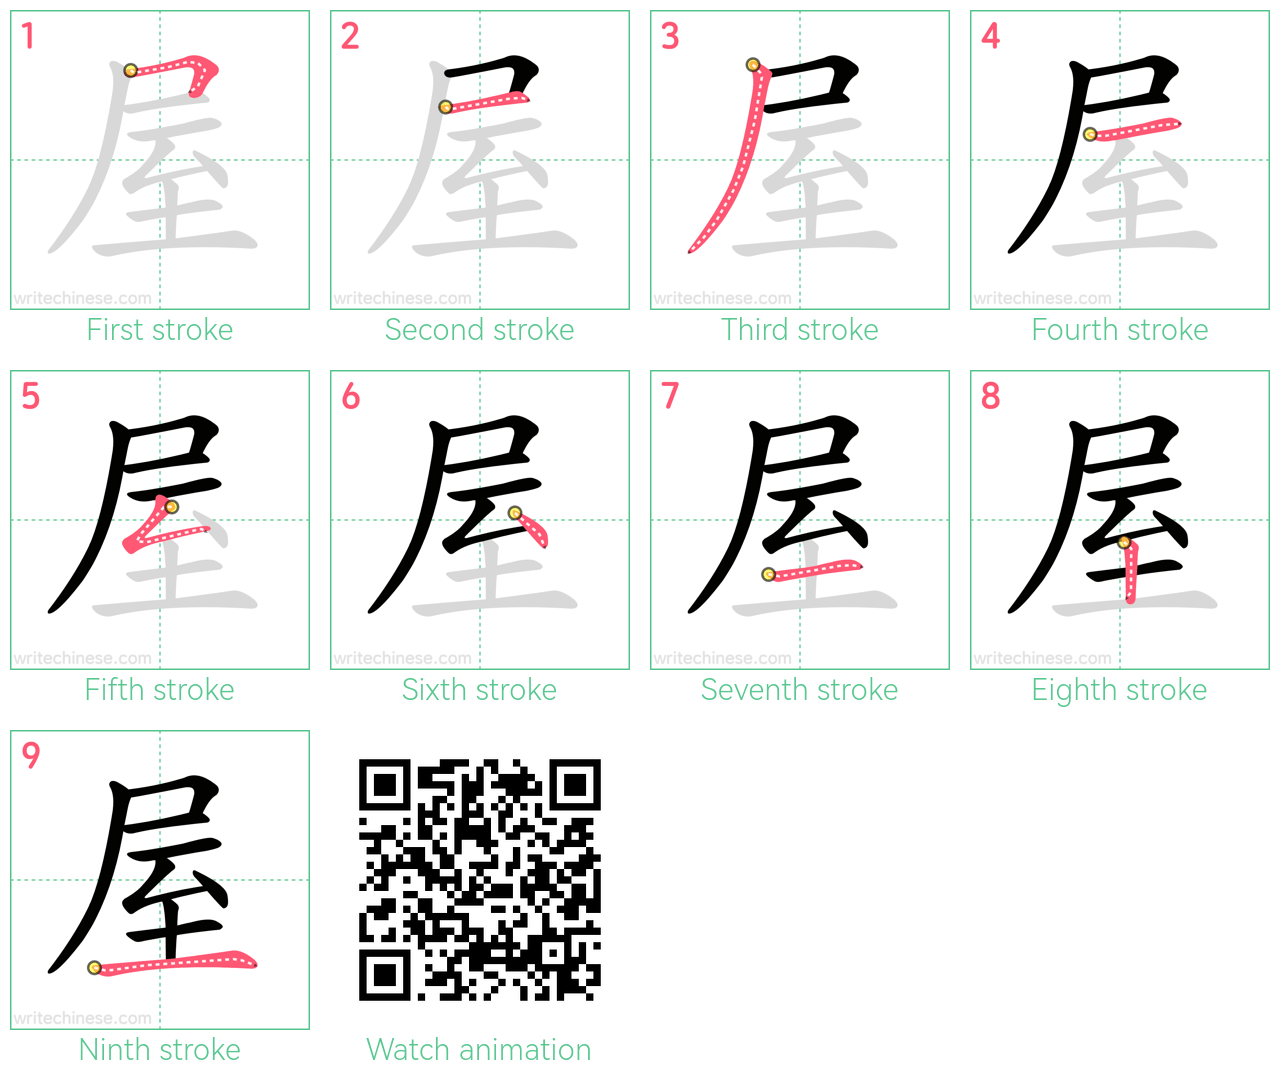 屋 step-by-step stroke order diagrams